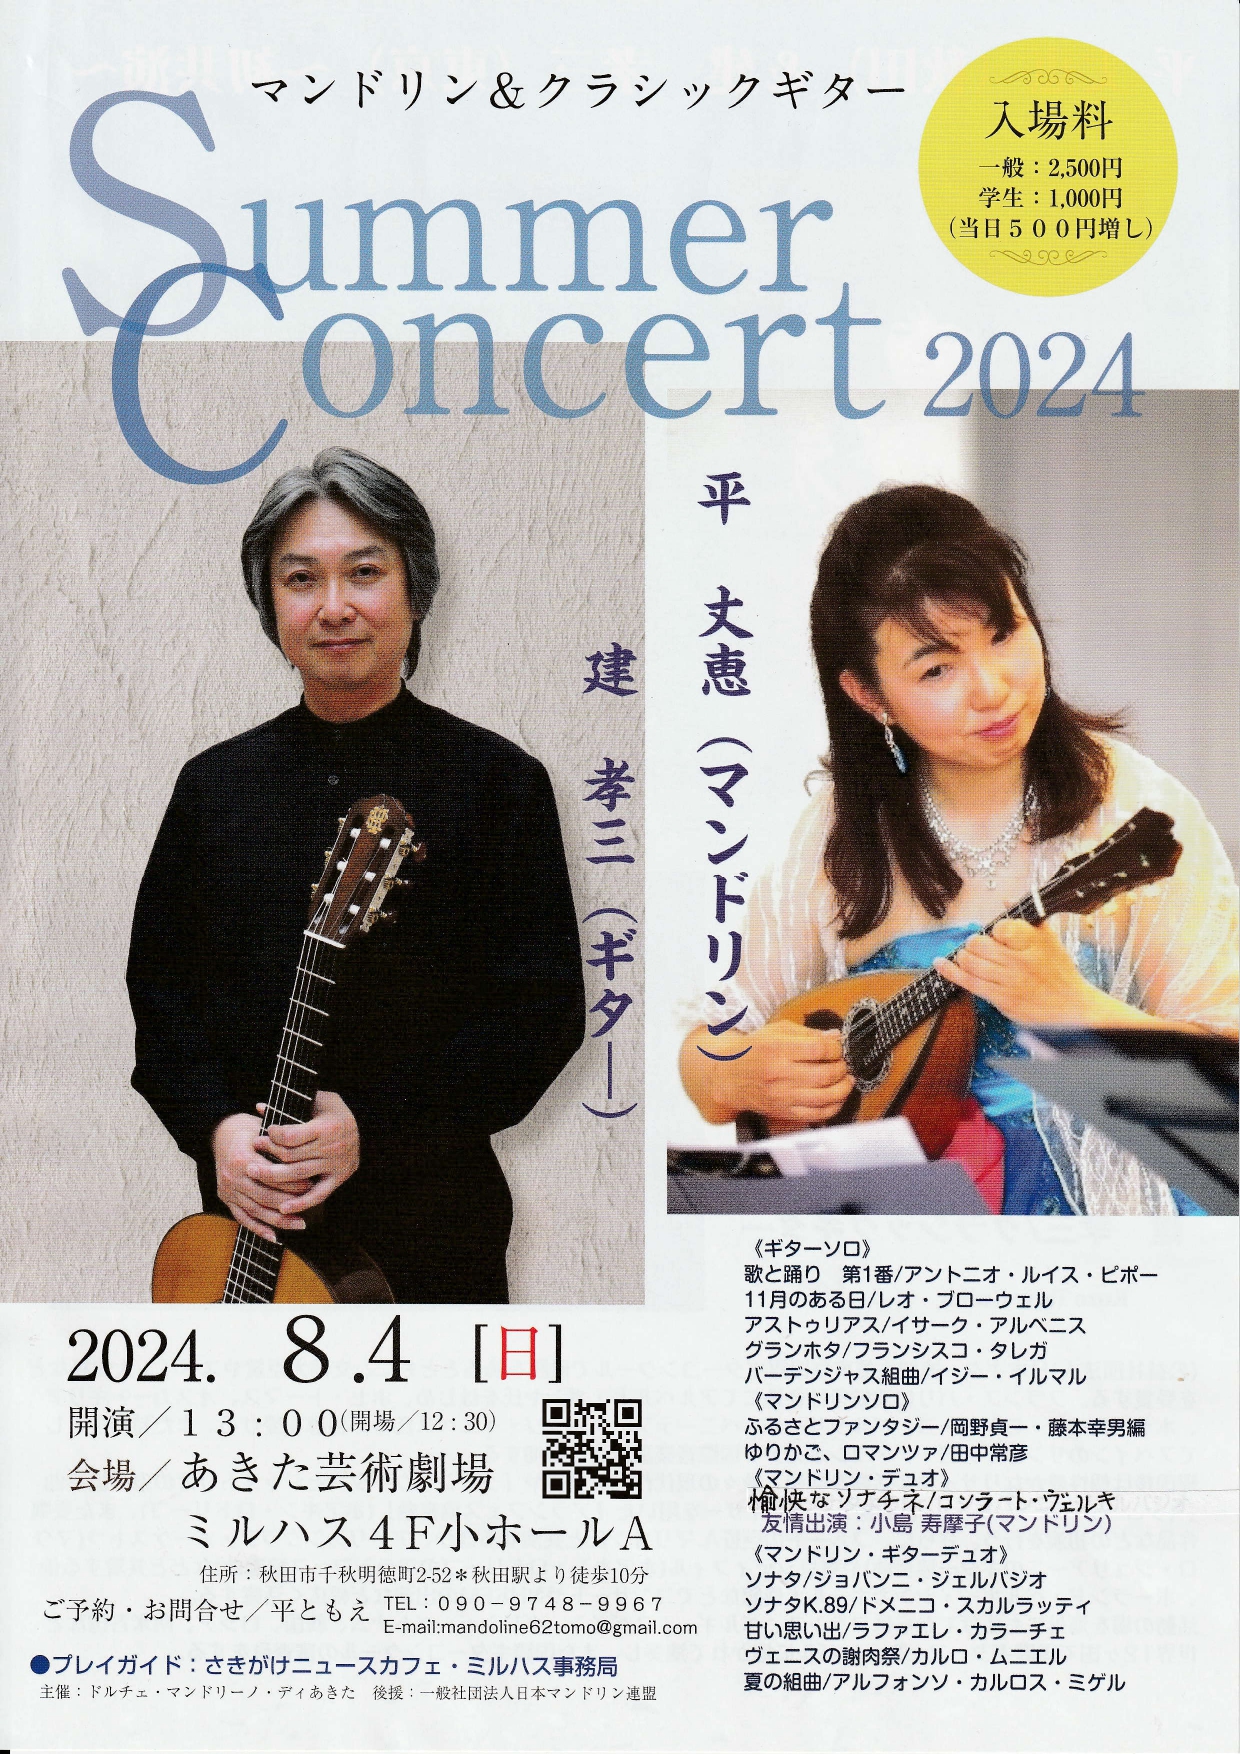 平 丈恵(マンドリン) 建 孝三(ギター) Summer Concert 2024